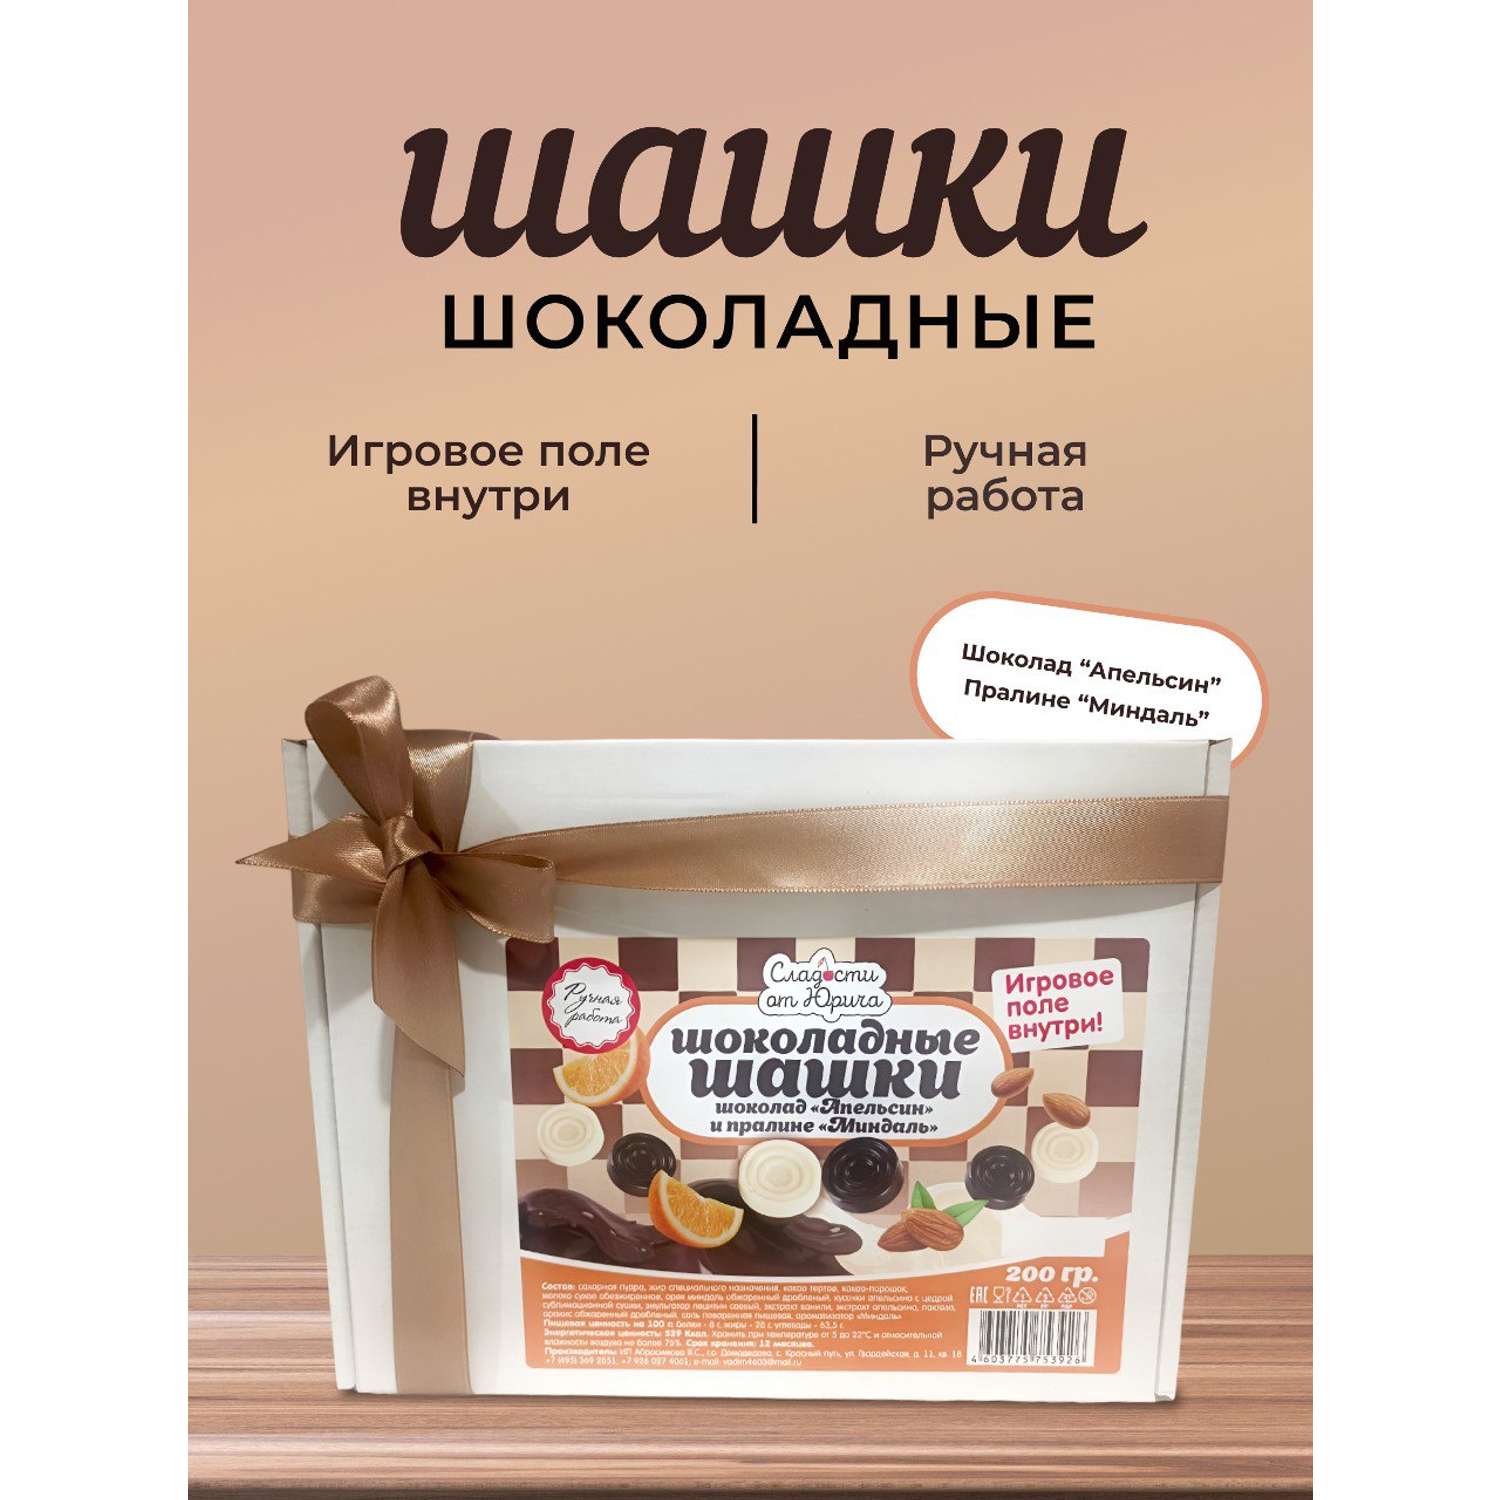 Шоколадные шашки Сладости от Юрича со вкусом Апельсина и Пралине ручной работы - фото 1